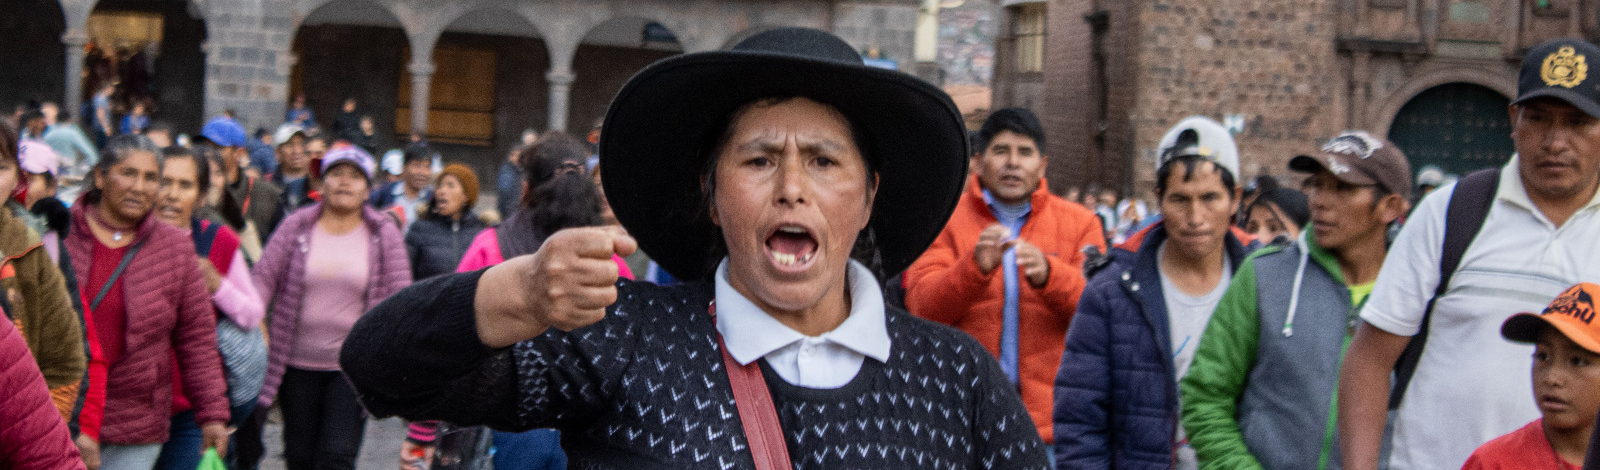 Peru: ditadura Boluarte recorre à opressão pois tem medo da mobilização popular